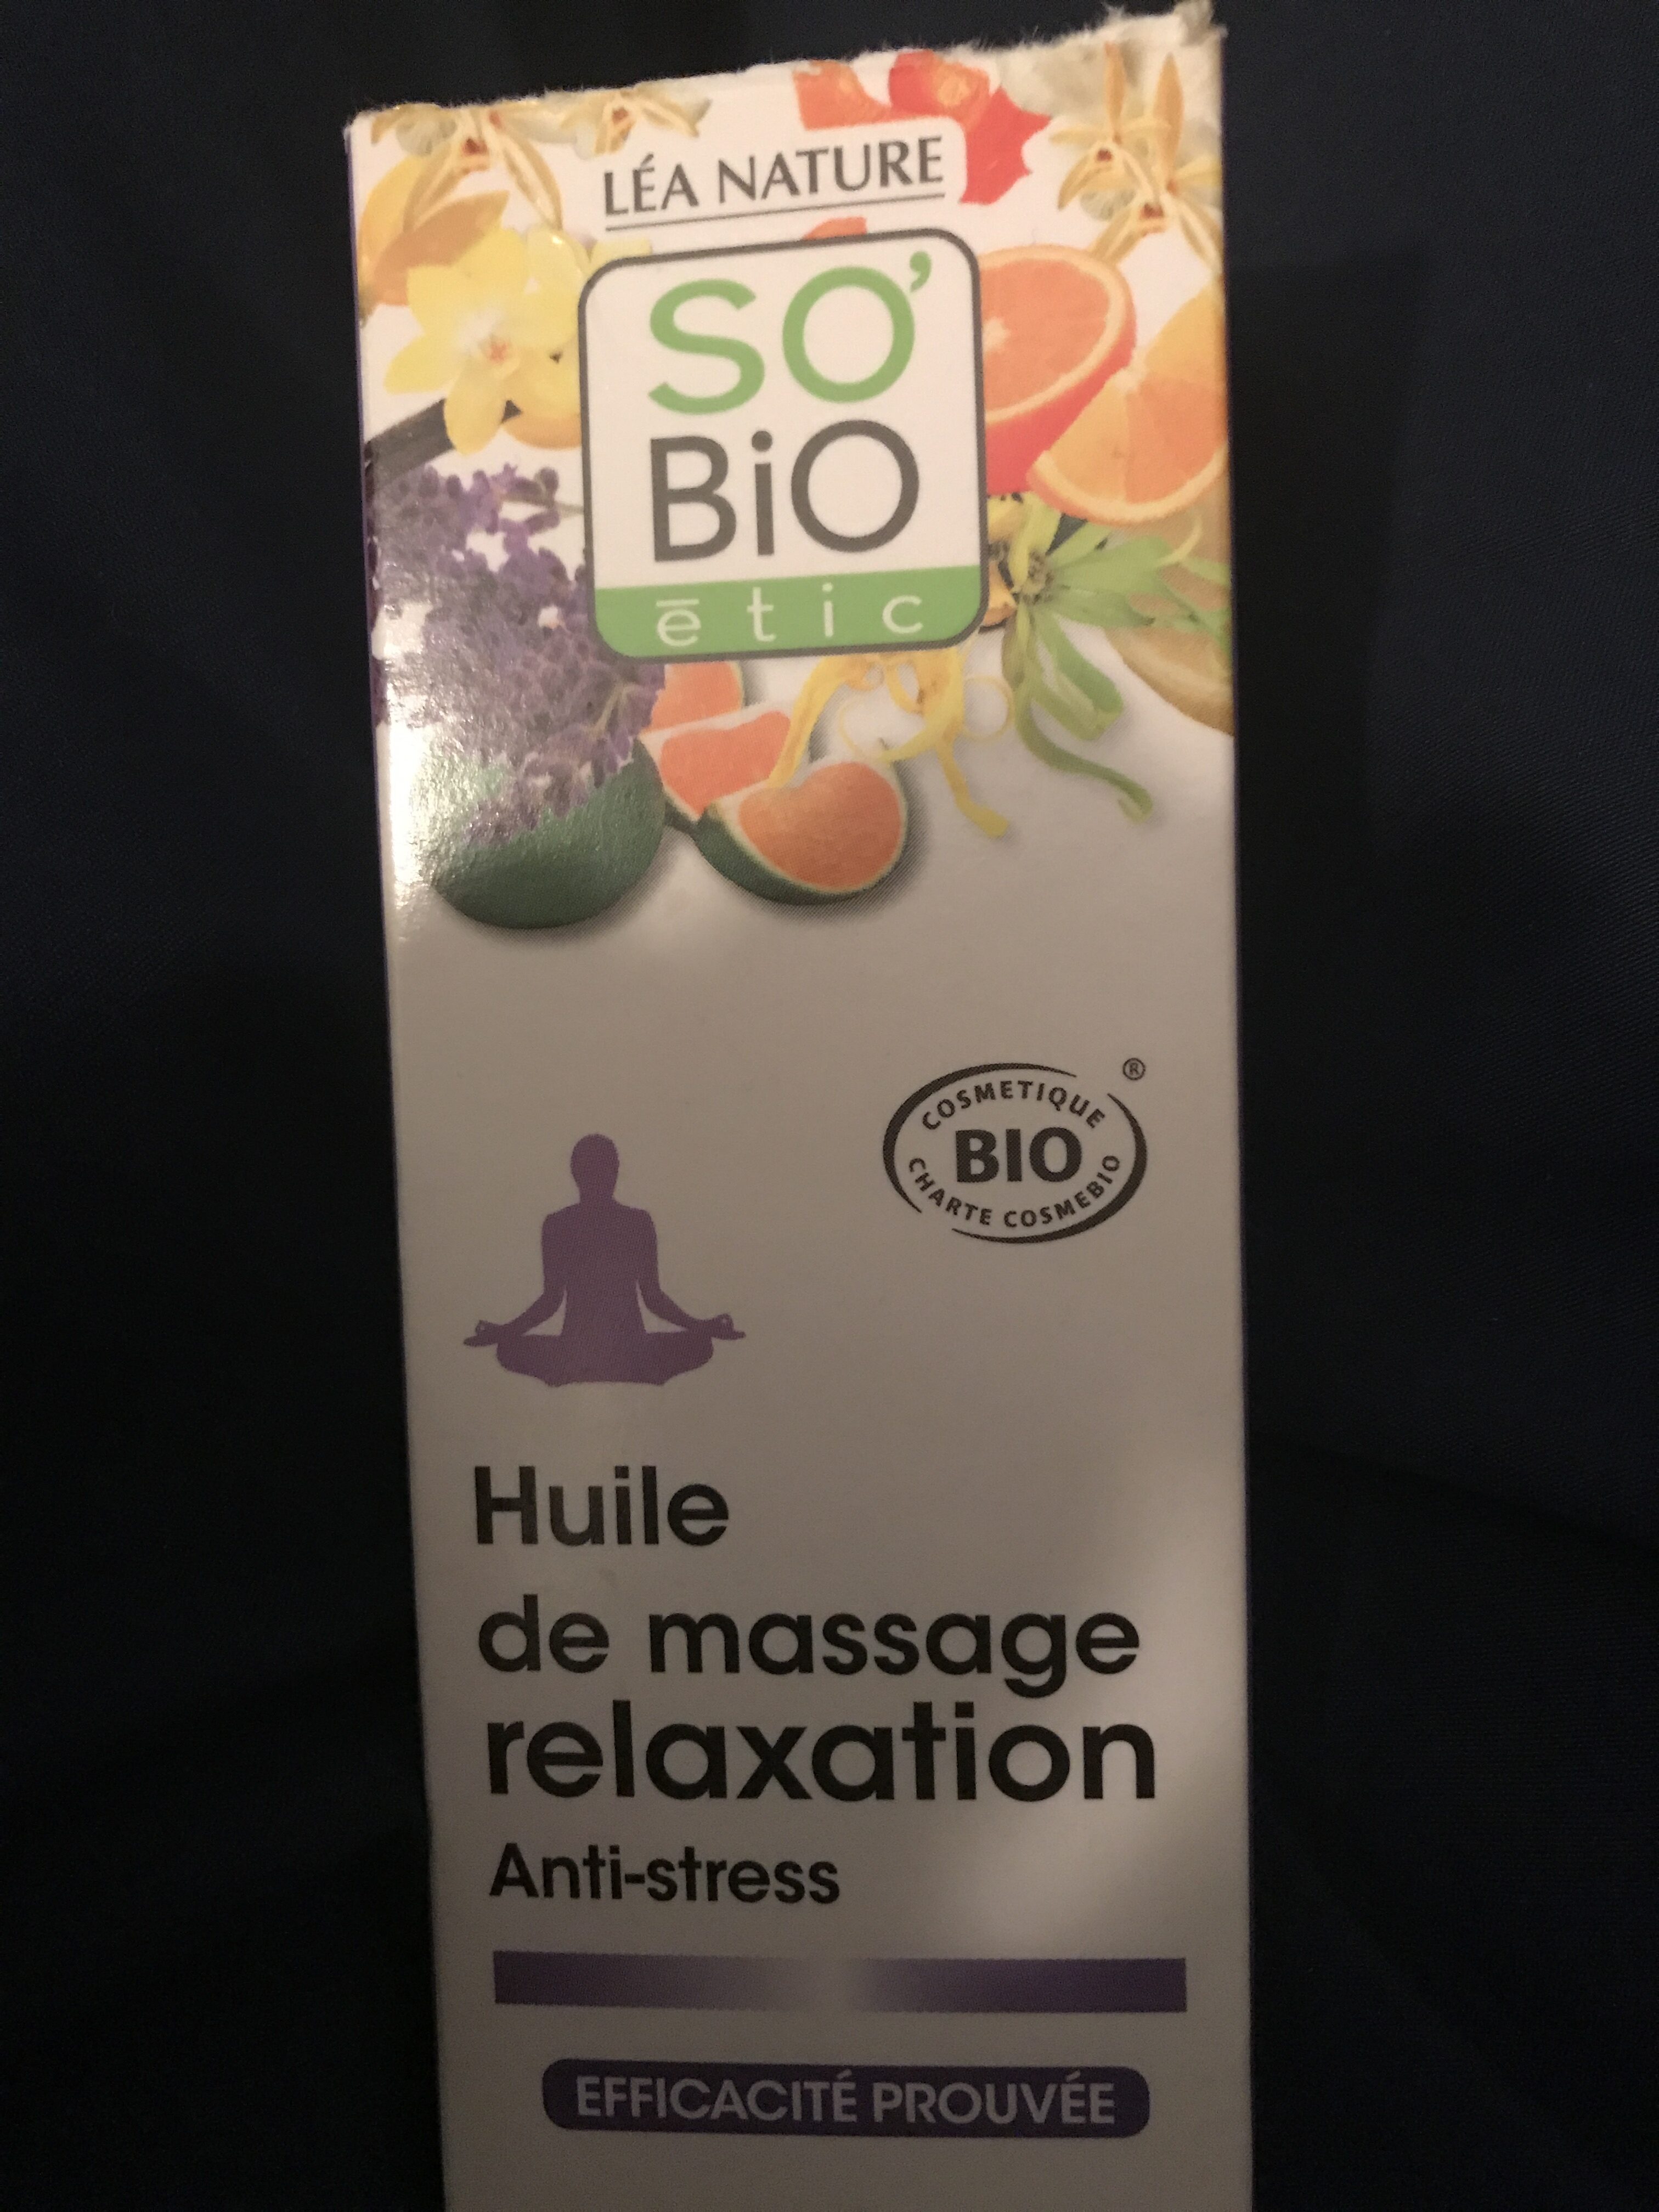 Huile de massage relaxation - Продукт - fr